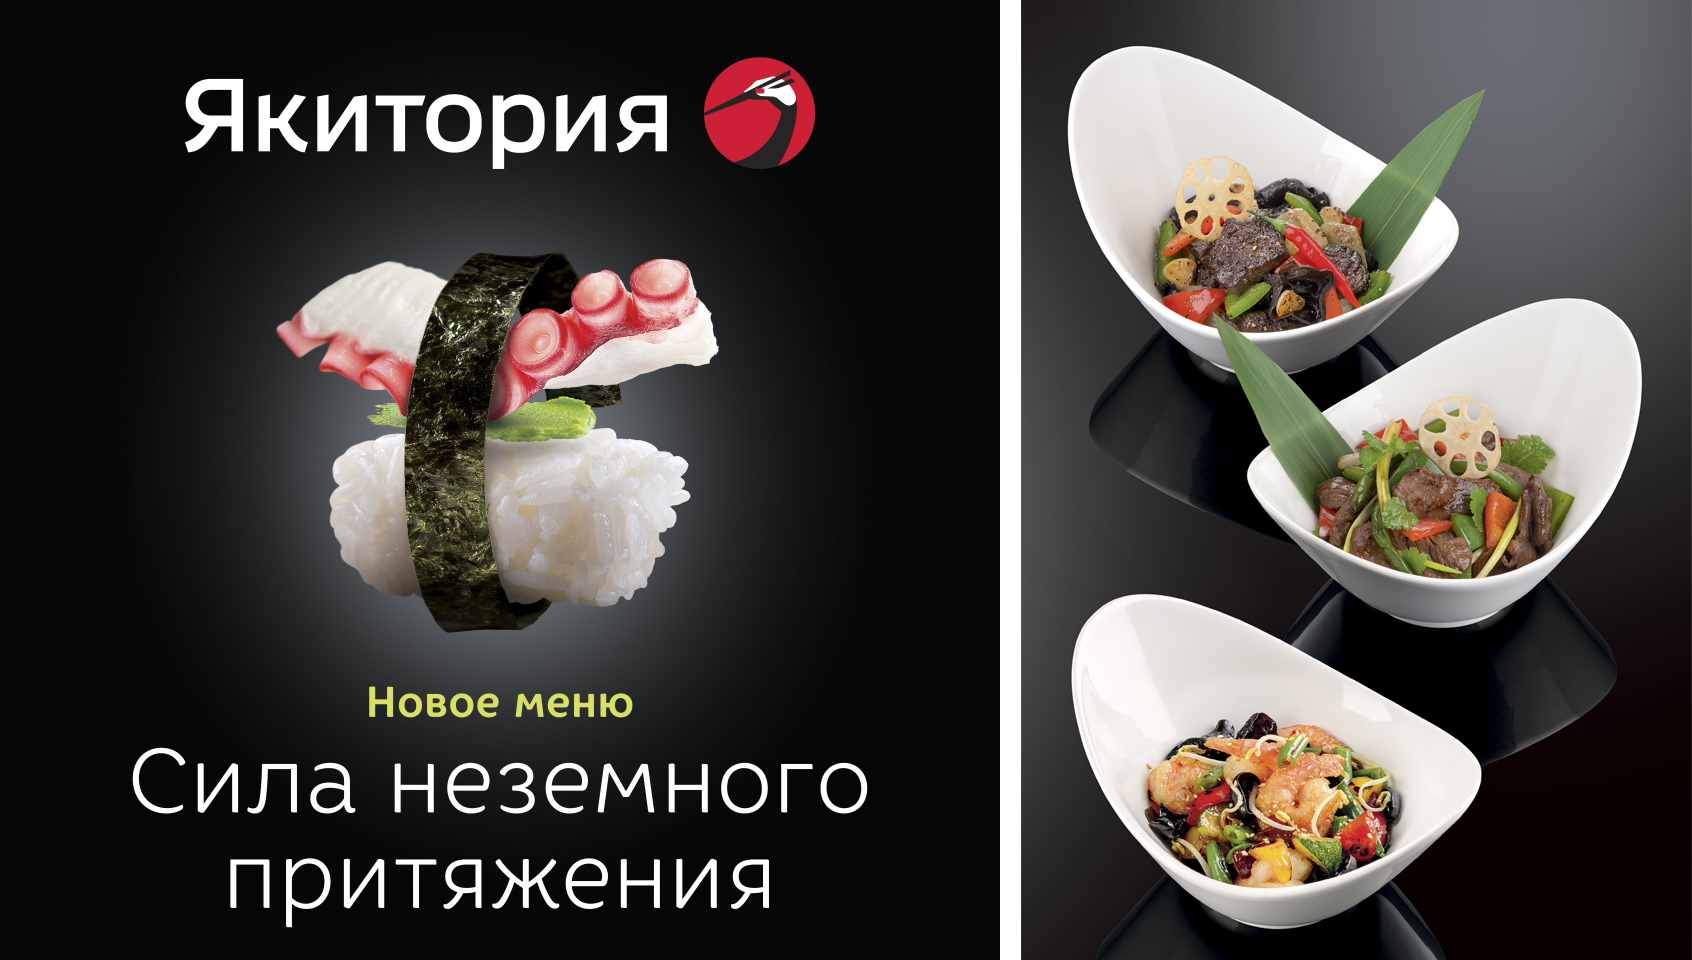 Встречайте обновленную «Якиторию» в Калининграде! Новый фирменный стиль, новое меню и многое другое! 